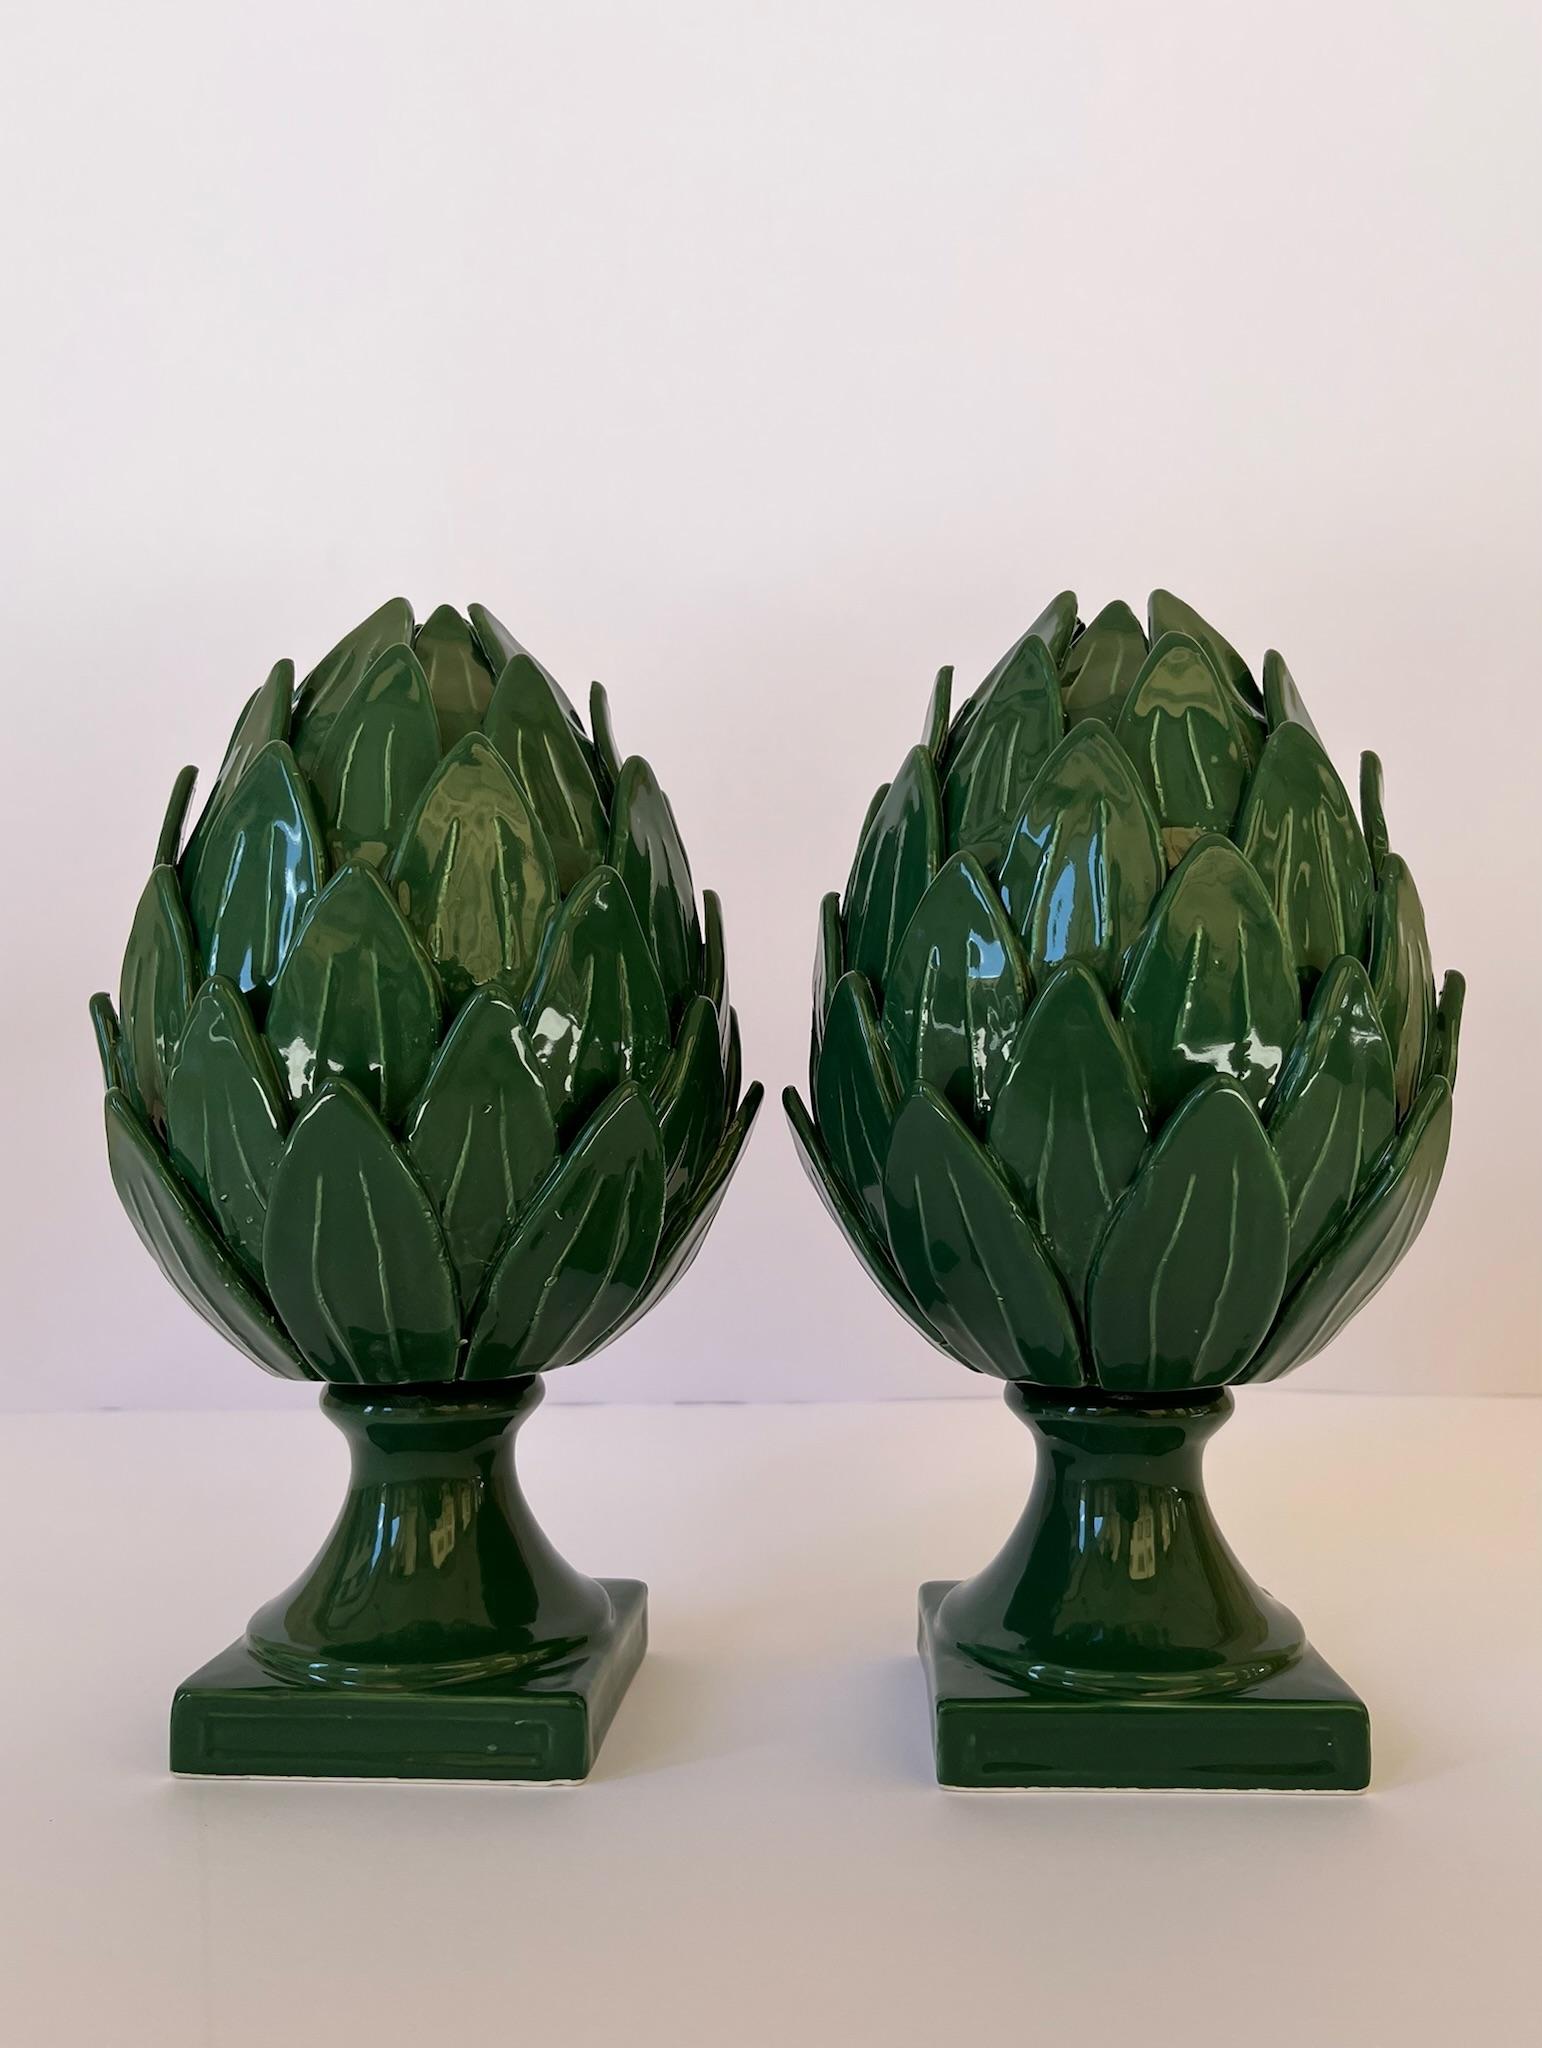 Très rare paire d'artichauts en céramique Vecchia Este, de couleur verte.
Ces pièces ont été réalisées au XXIe siècle en céramique dans une petite ville proche de la région de Padoue.

Ces artichauts demandent un travail énorme car chaque pièce est